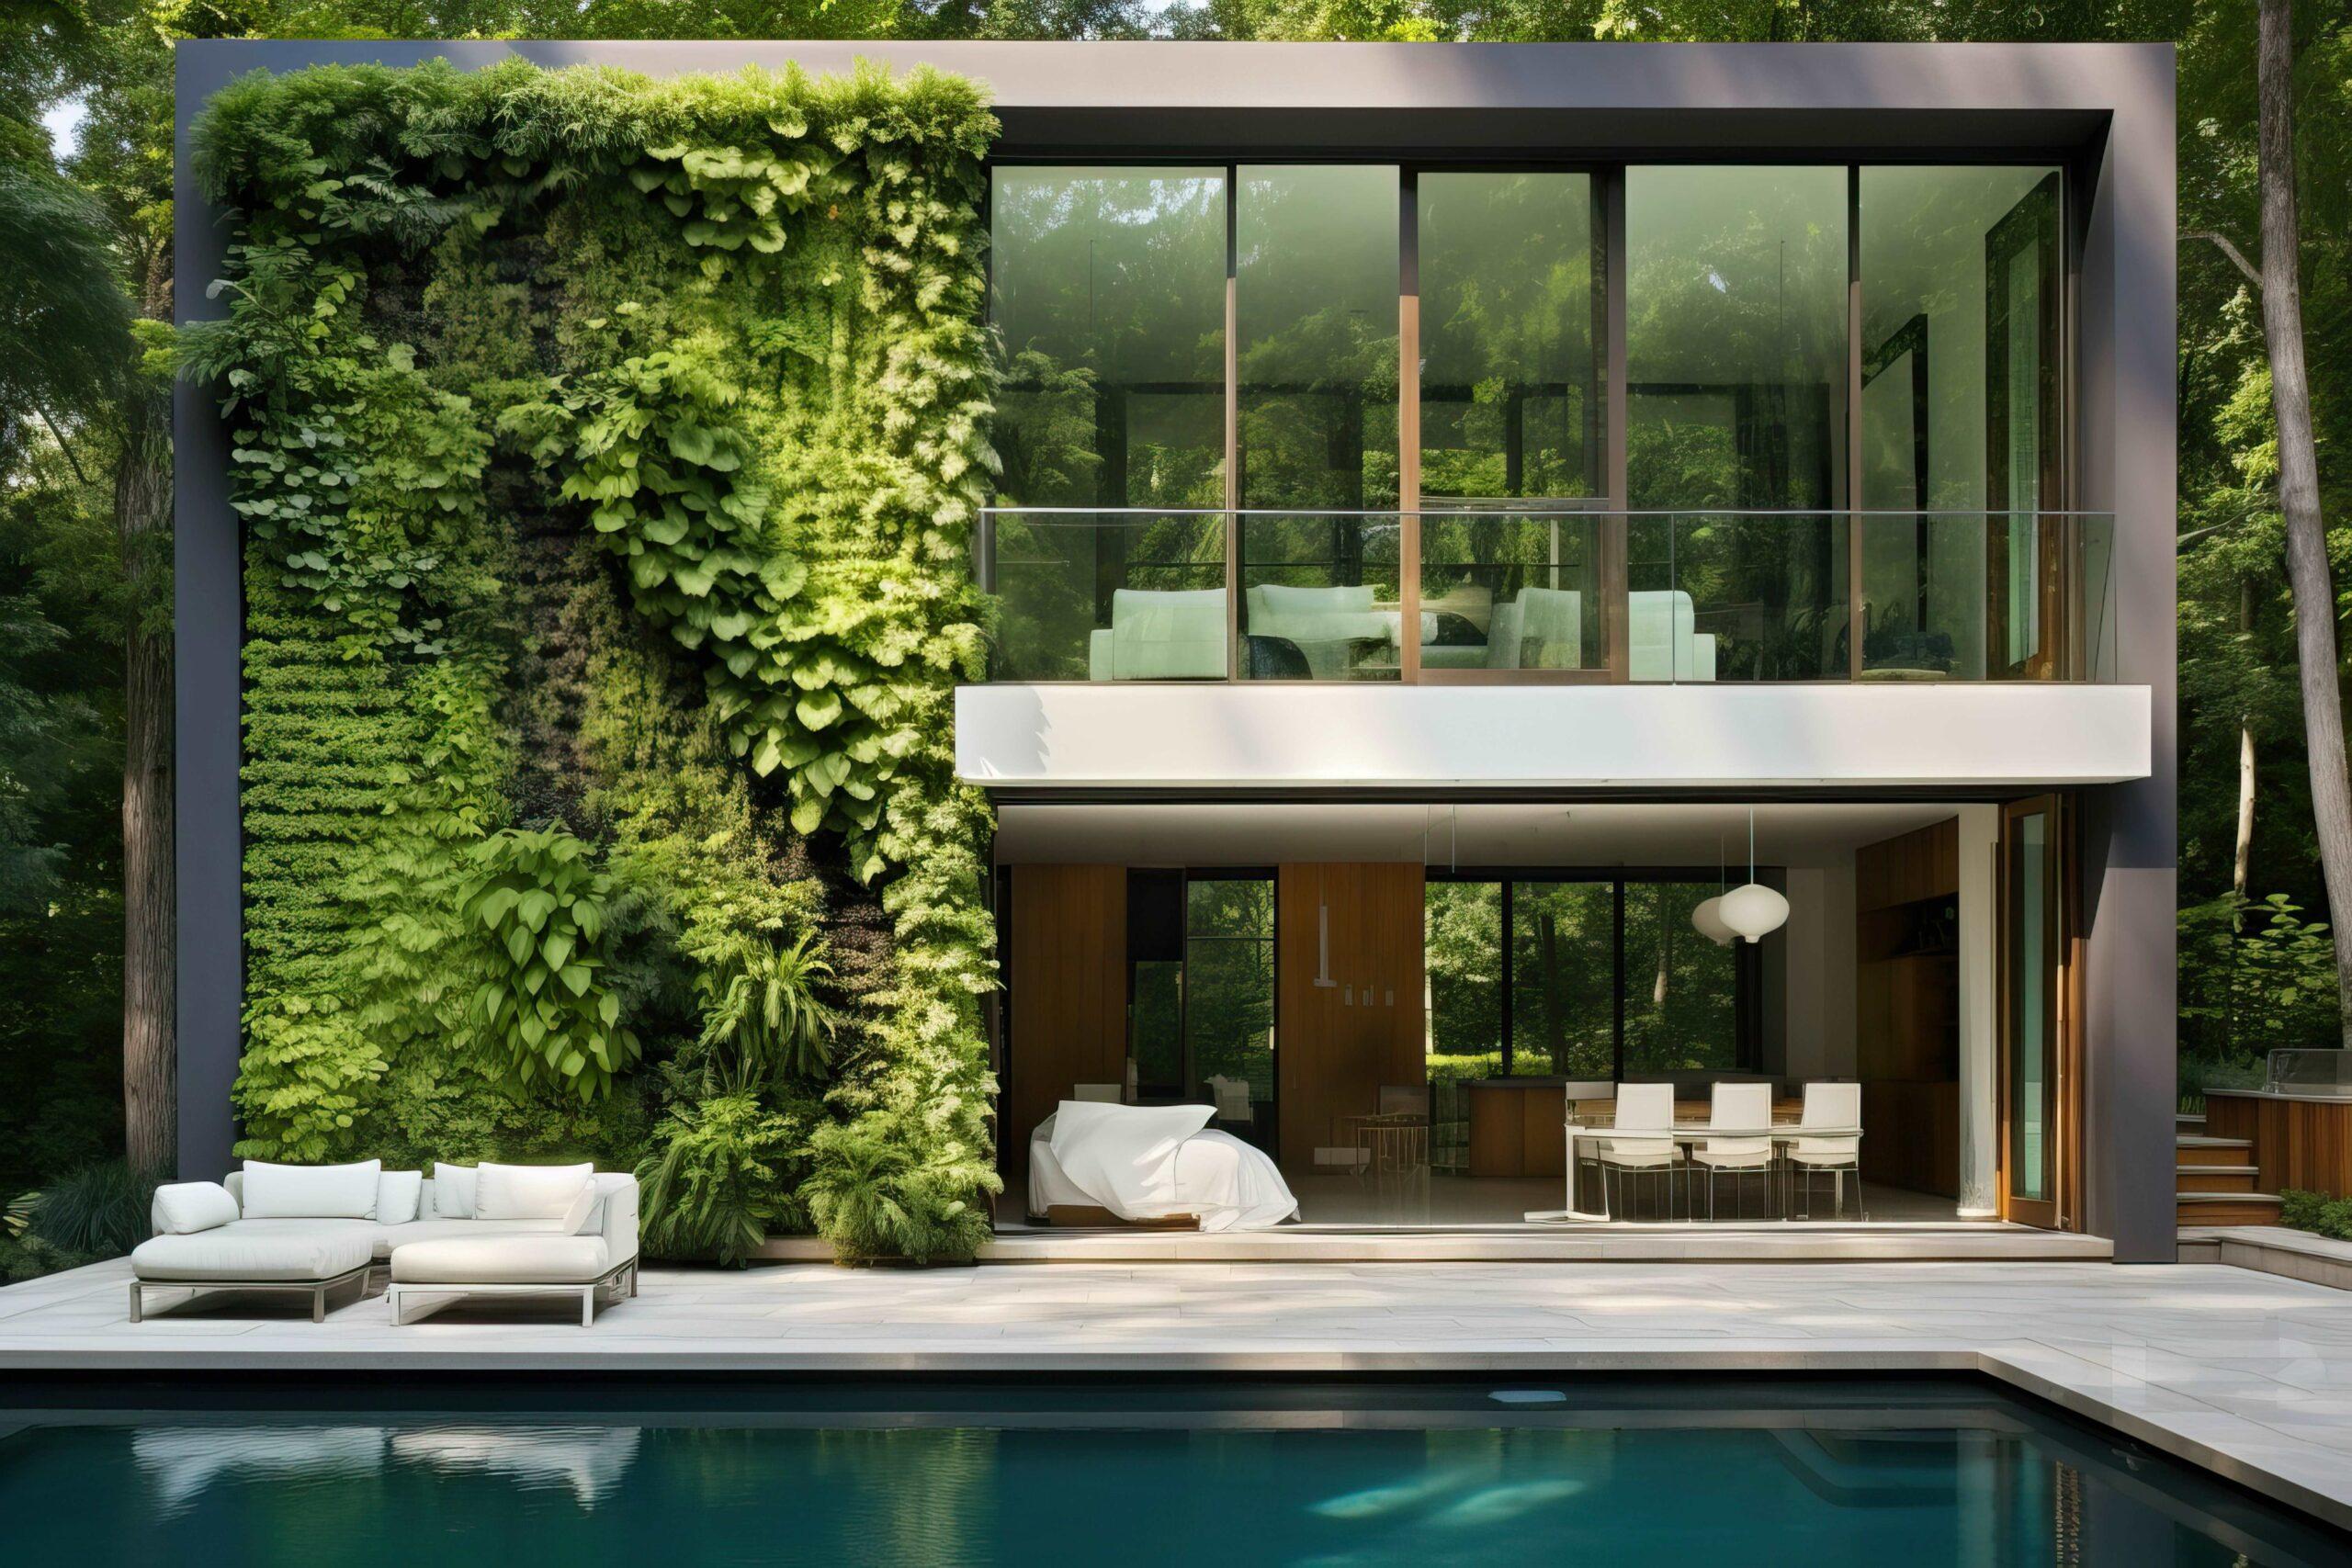 Hydroponischer vertikaler Garten im modernen Haus. Vertikale Gartenideen für kleine Räume. Wand mit Pflanzen dekoriert